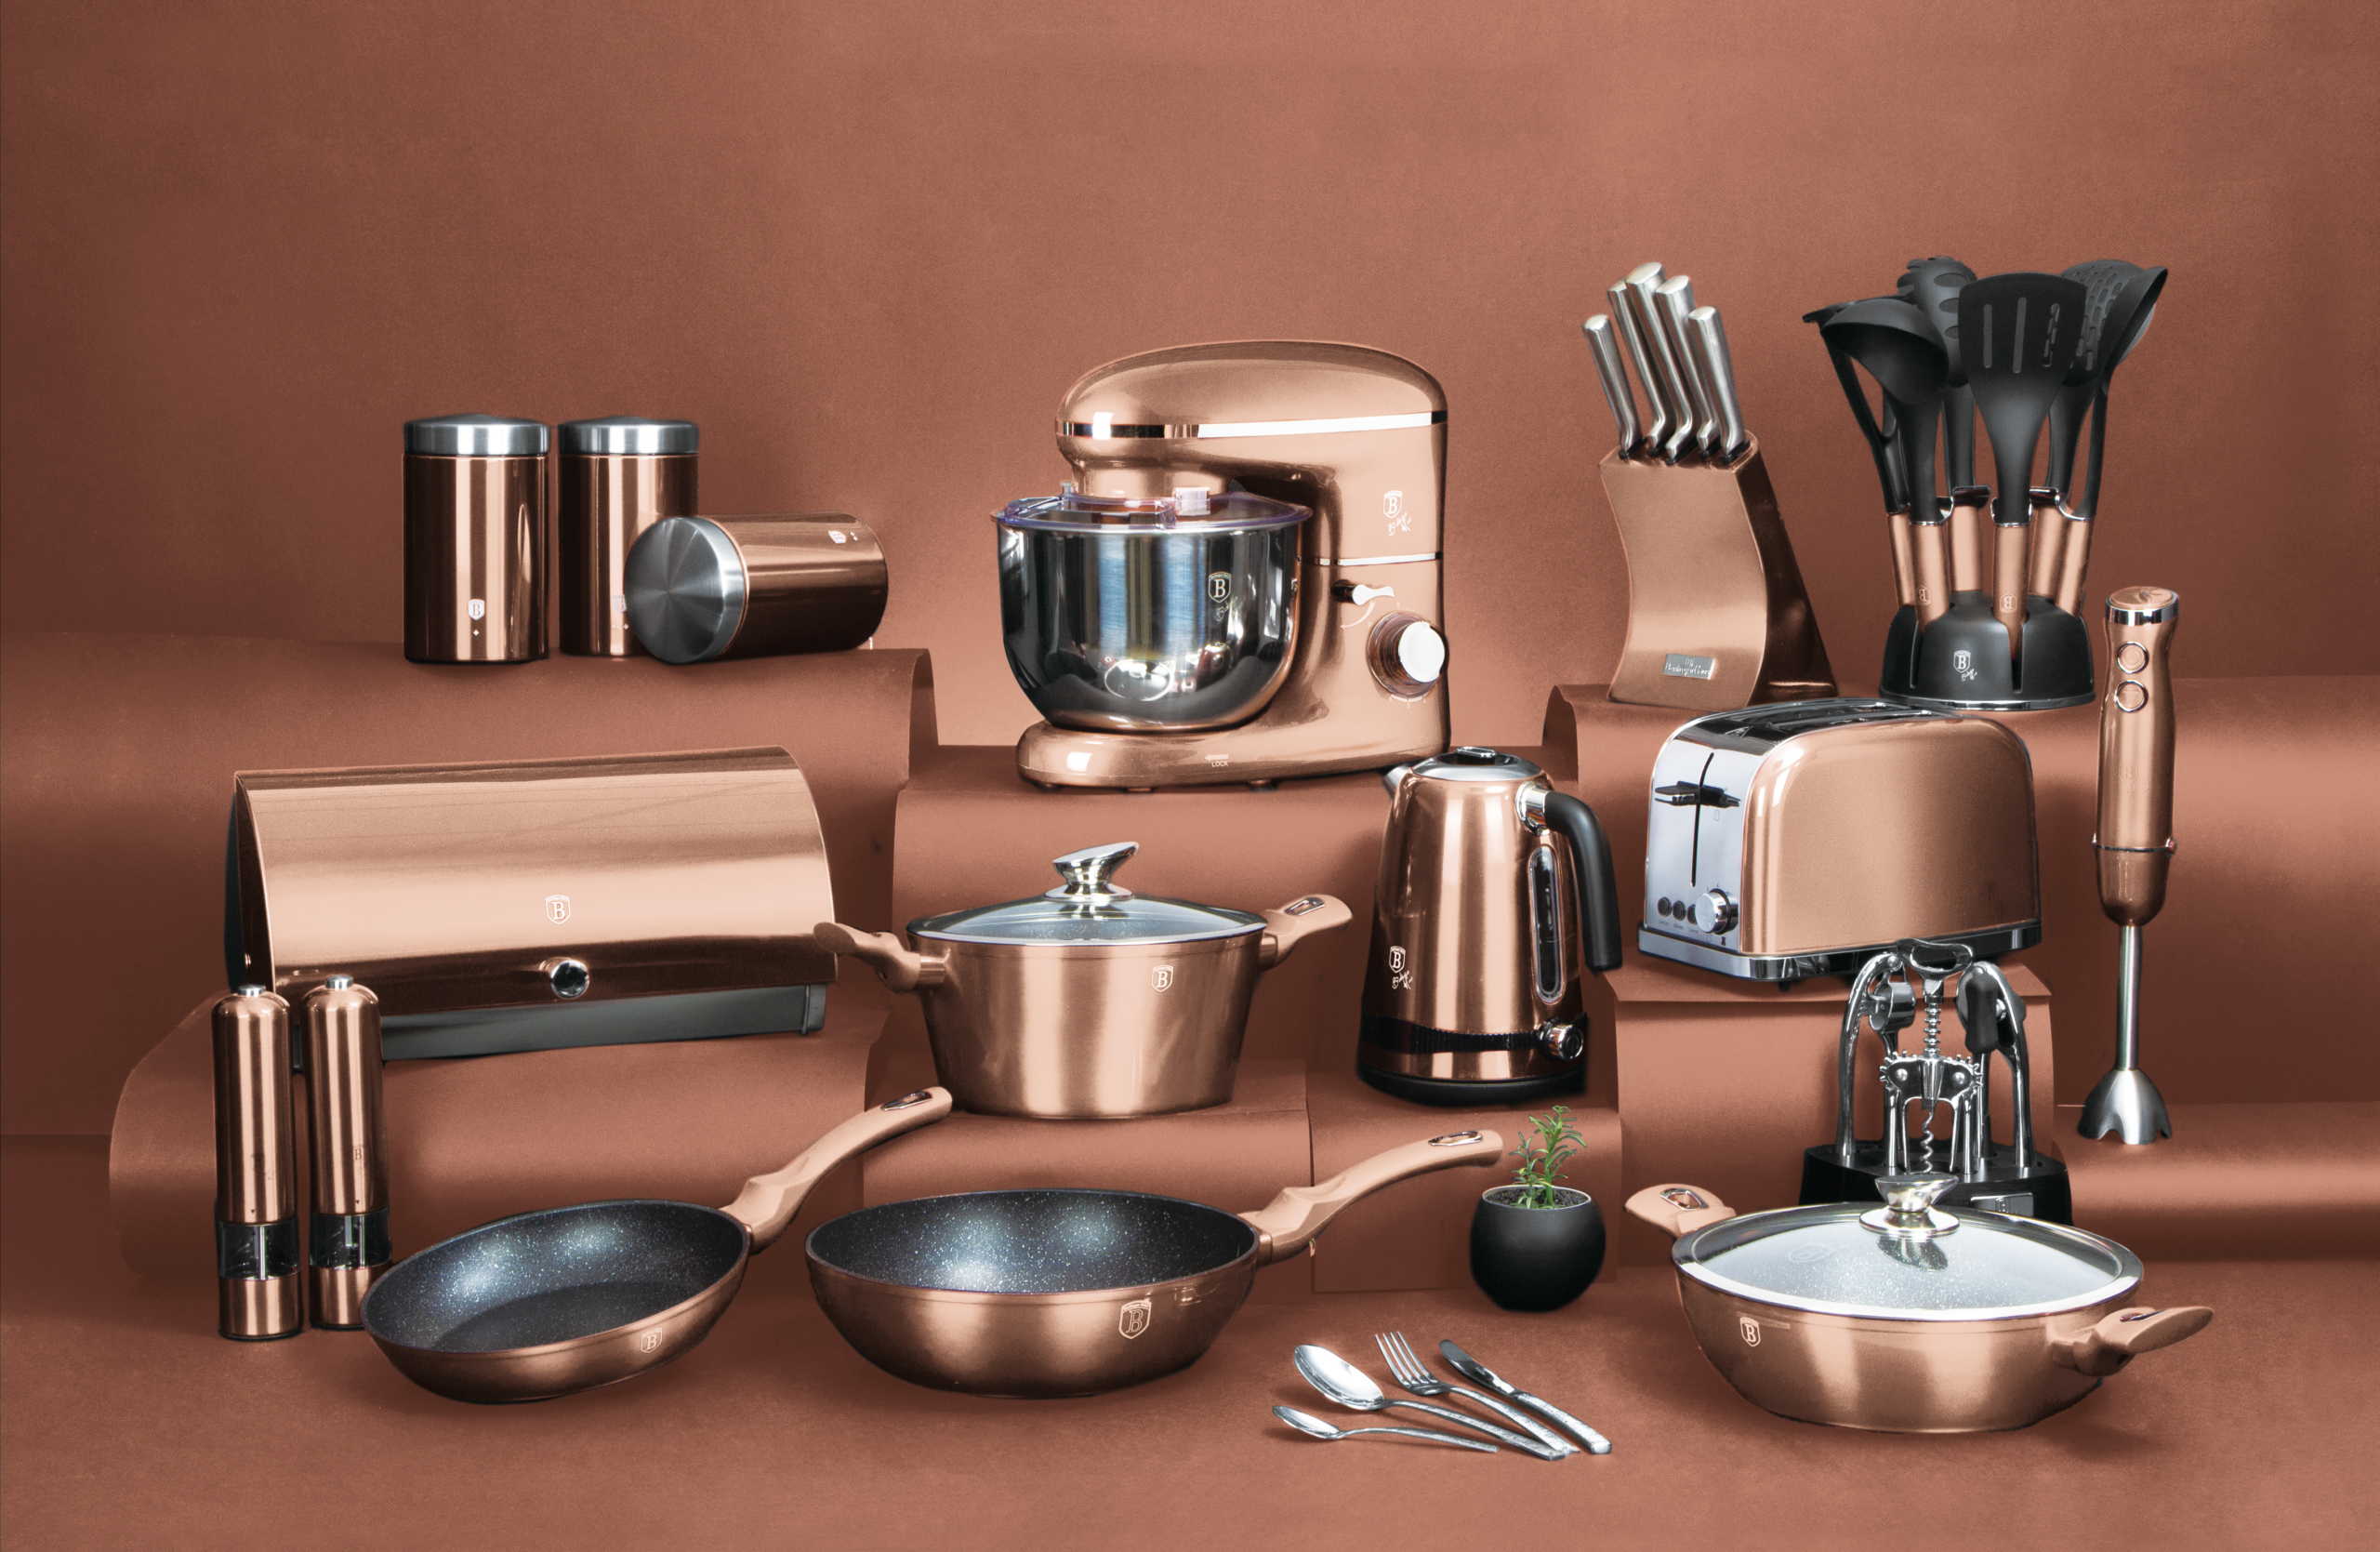 BerlingerHaus Metallic Line Rose Gold Edition teljes termékcsalád minden azonos színű konyhai eszközzel